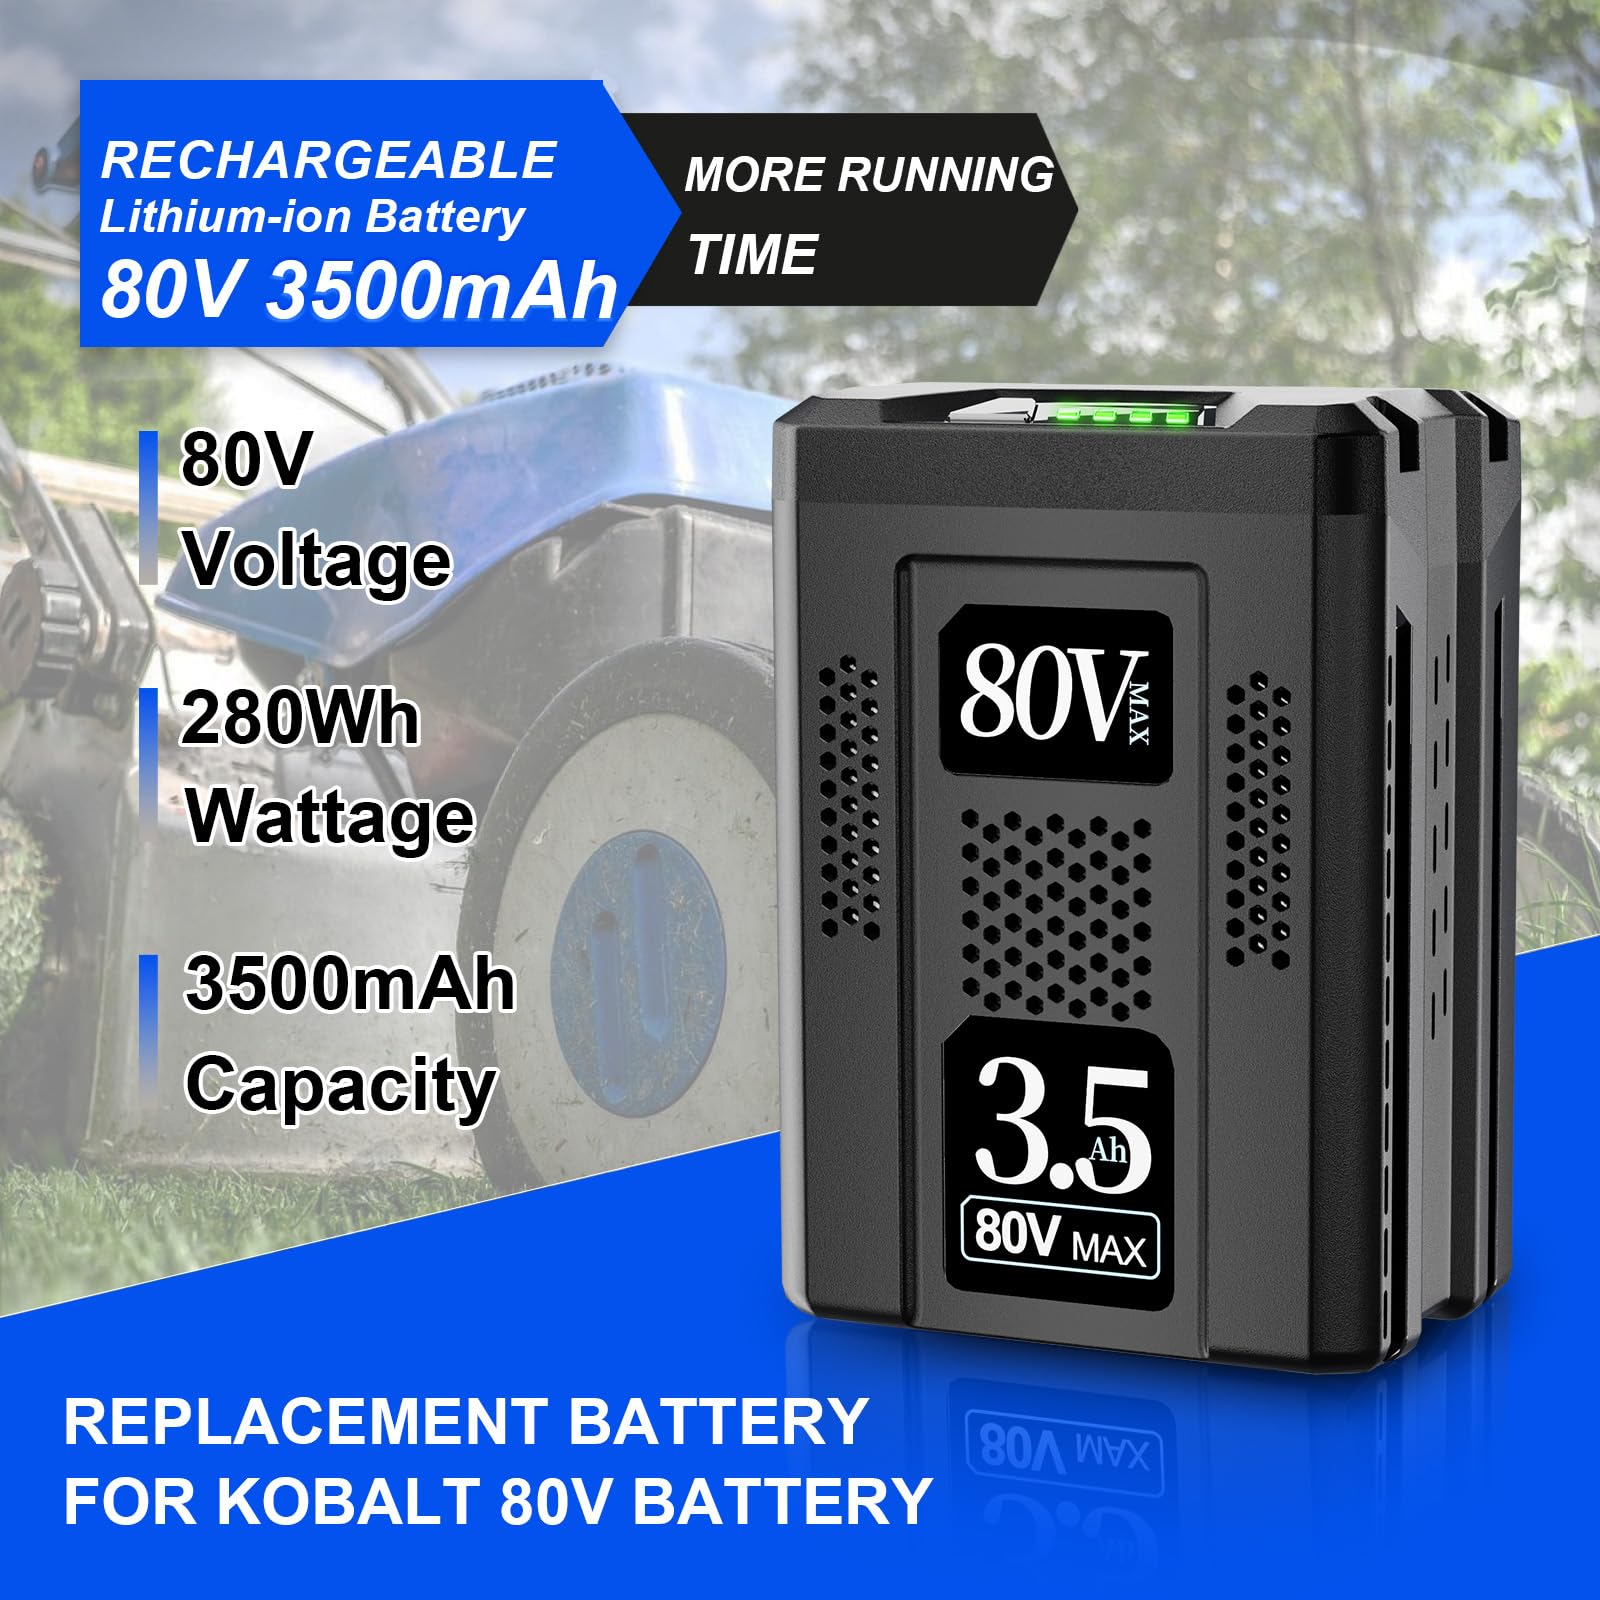 NEPOWILL 80V 3.5Ah Replacement Battery for Kobalt 80v Battery KB2580-06 KB580-06 KB680-06 KB280-06, Rechargeable Lithium Ion Battery for Kobalt 80V Cordless Power Tools